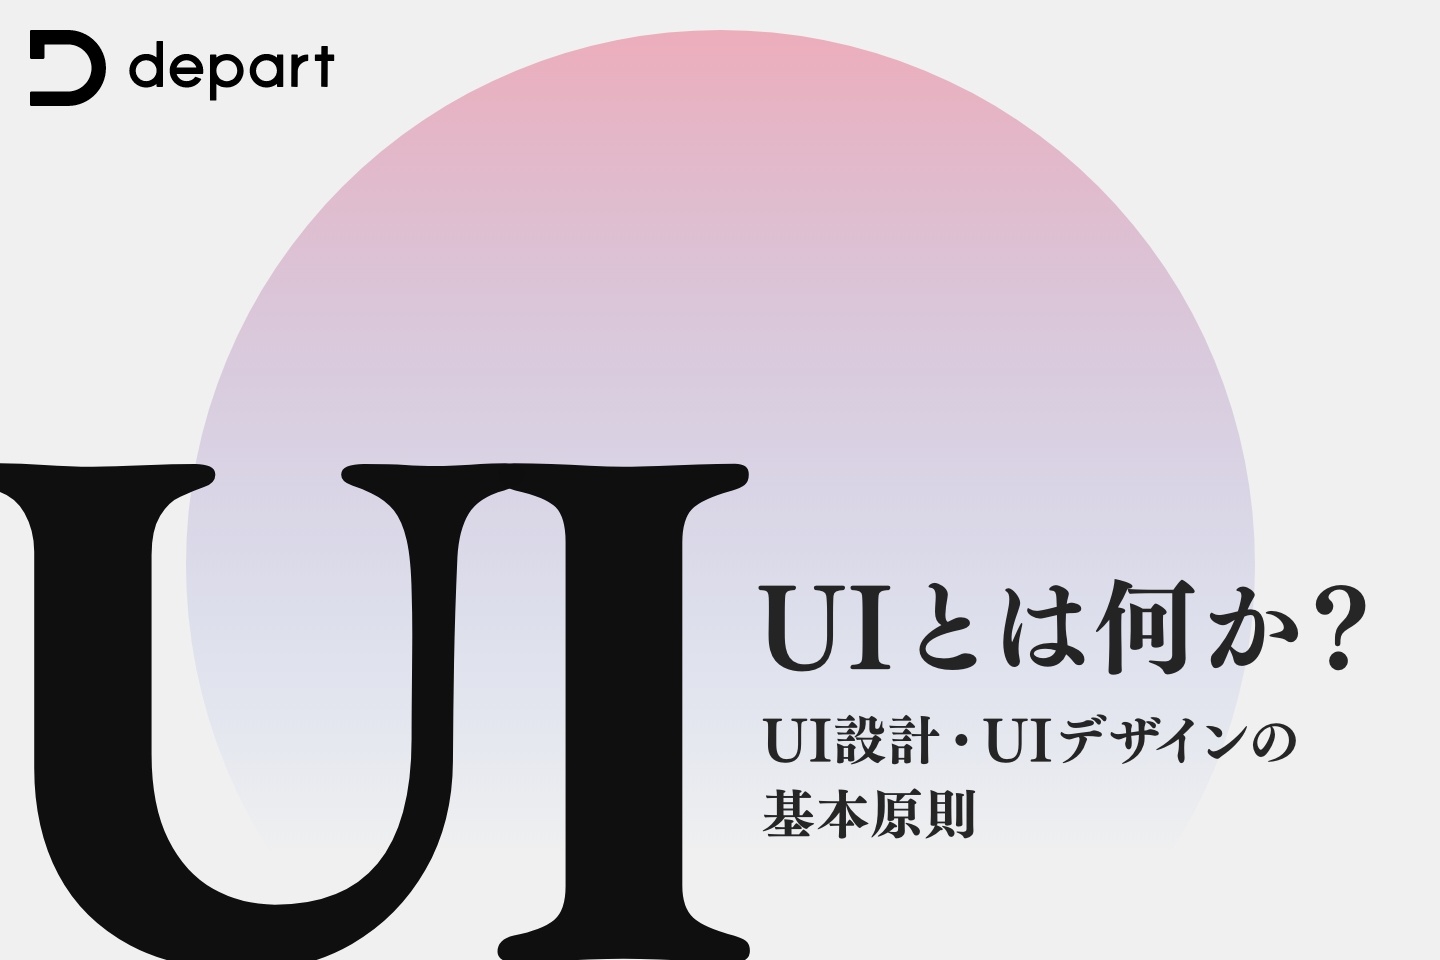 UI（ユーザーインターフェース）とは何か？UI設計およびUIデザインの基本原則について解説